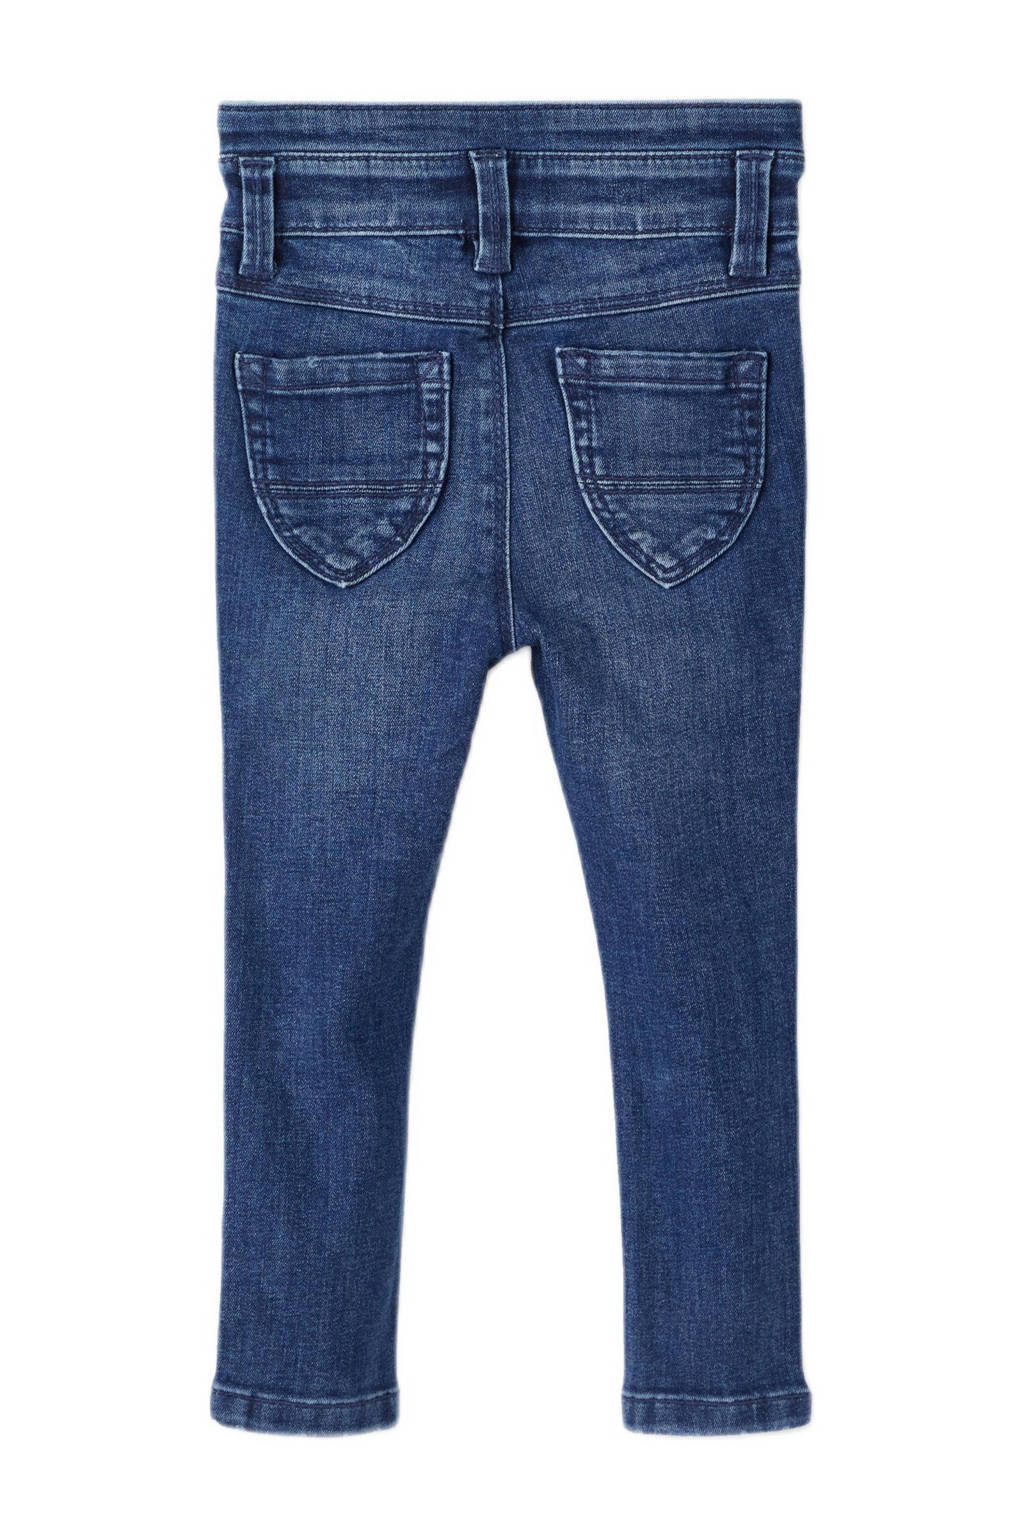 NAME IT MINI skinny jeans NMFPOLLY dark blue denim